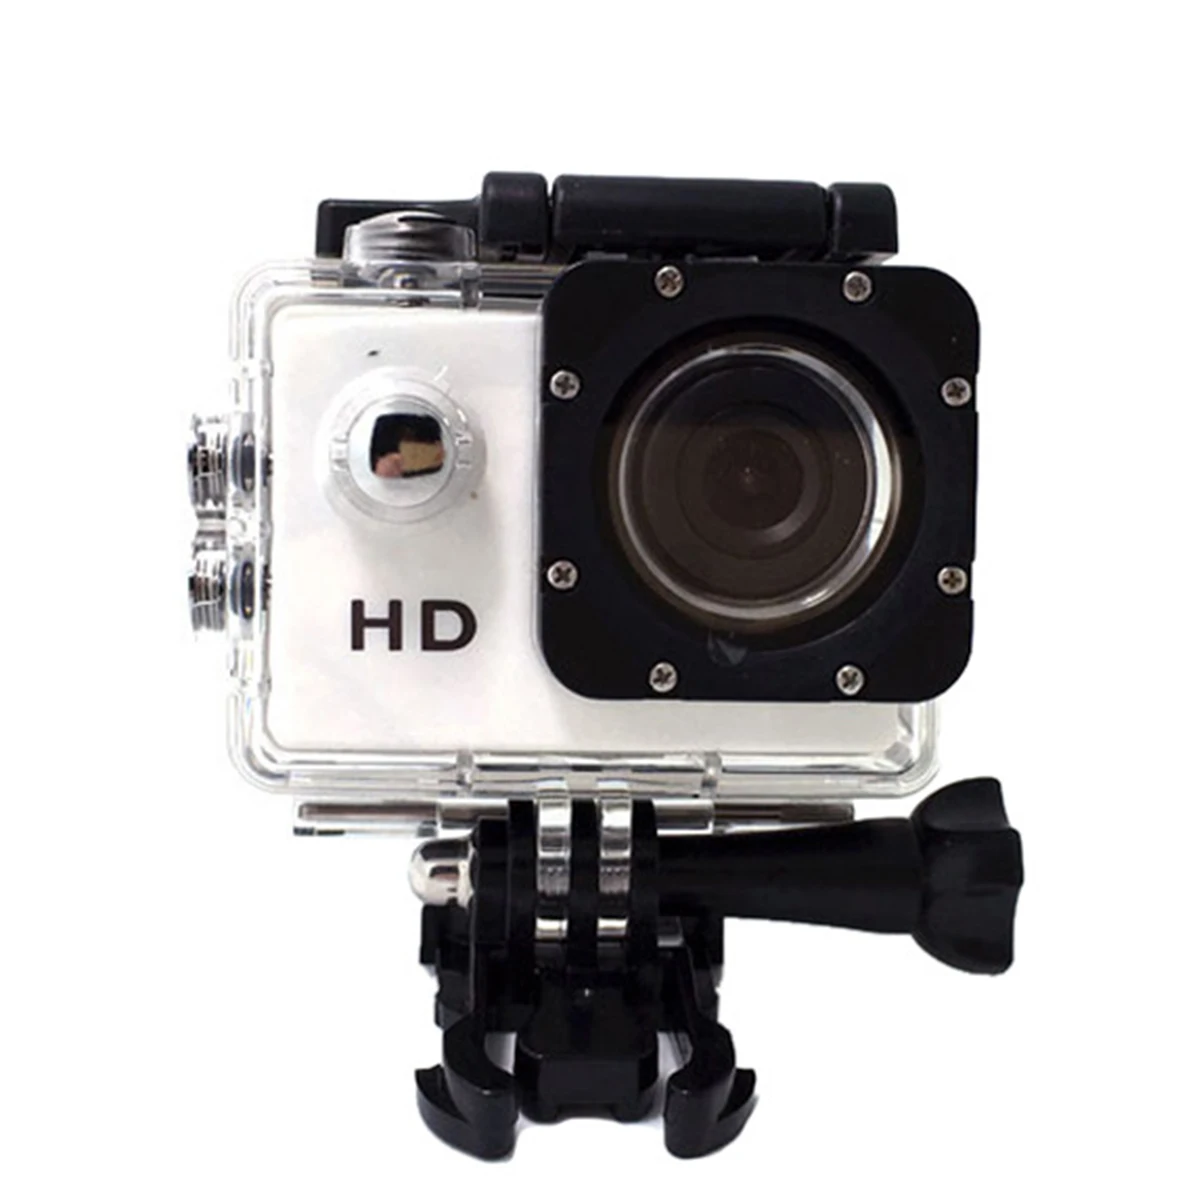 SJ4000 Экшн камера для дайвинга 30 м Водонепроницаемая 480P Full HD подводная спортивная камера для шлема Спорт DV12MP фото пиксель